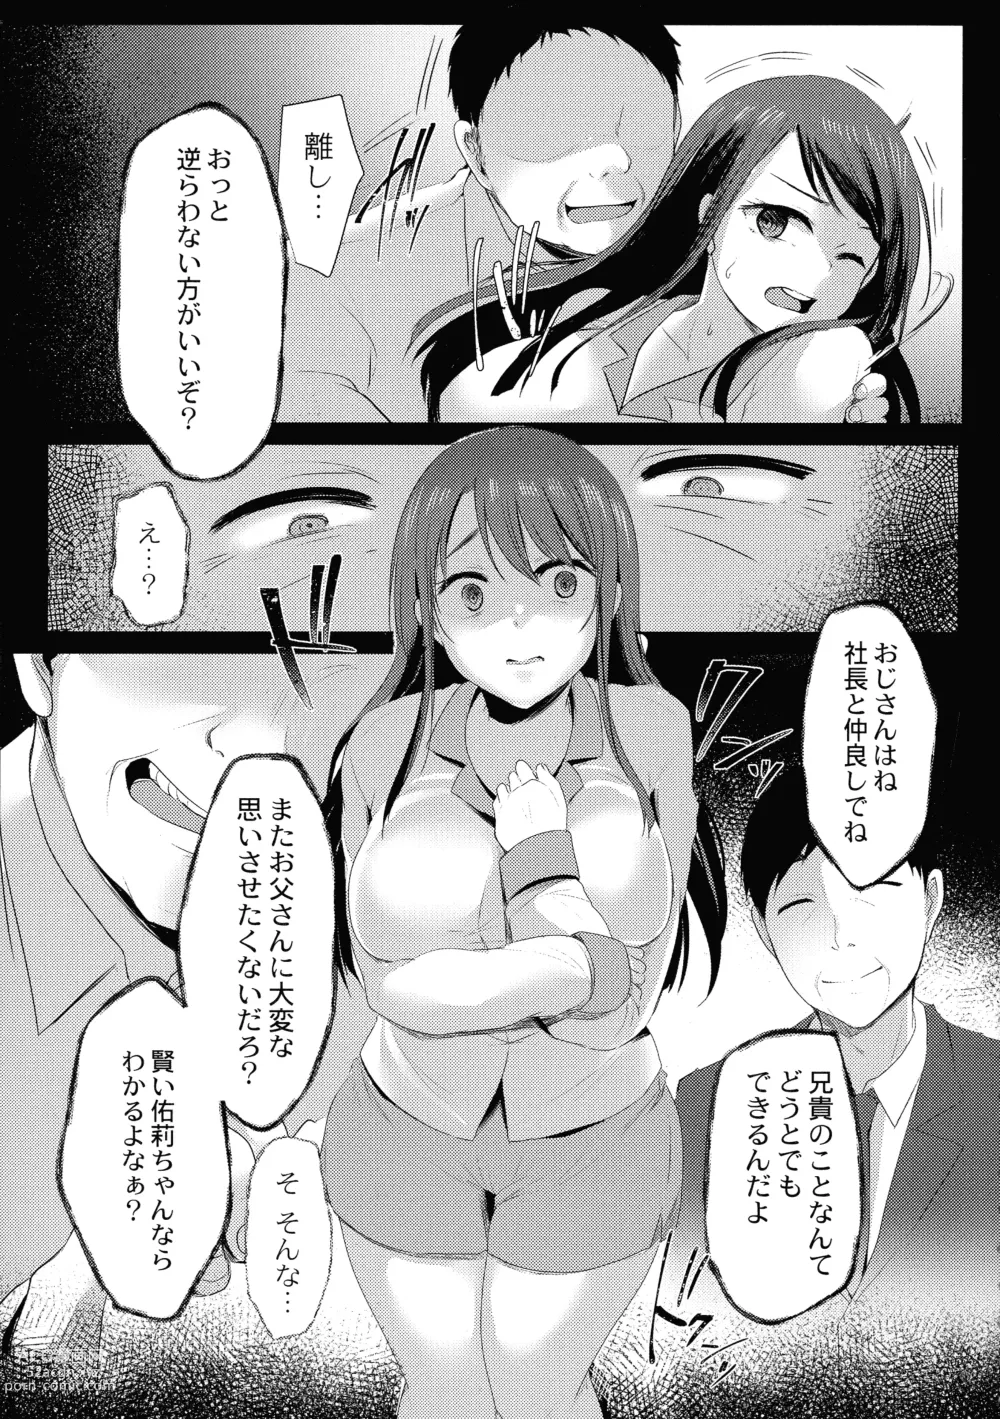 Page 11 of manga Mesuochi.